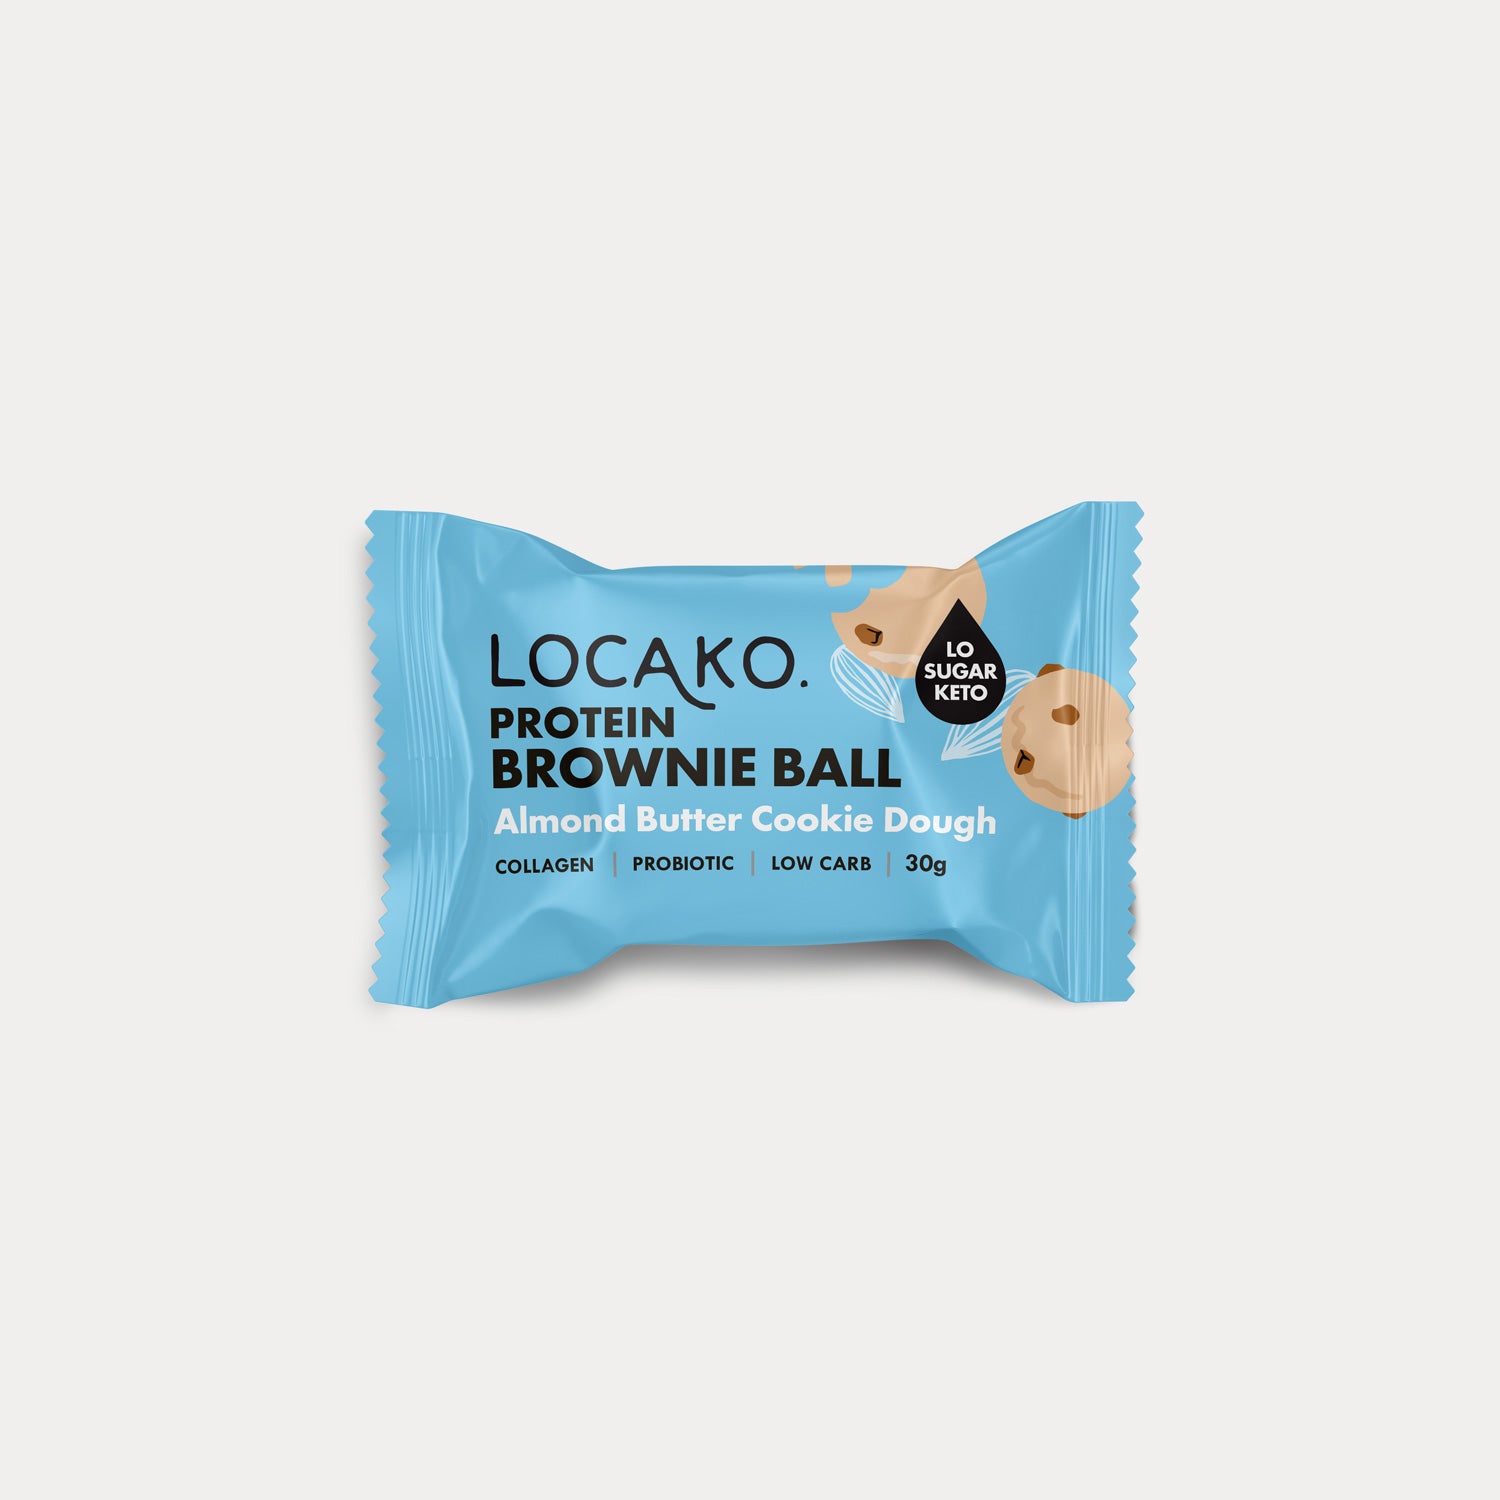 Protein Brownie Balls - Almond Butter Cookie Dough - Locako